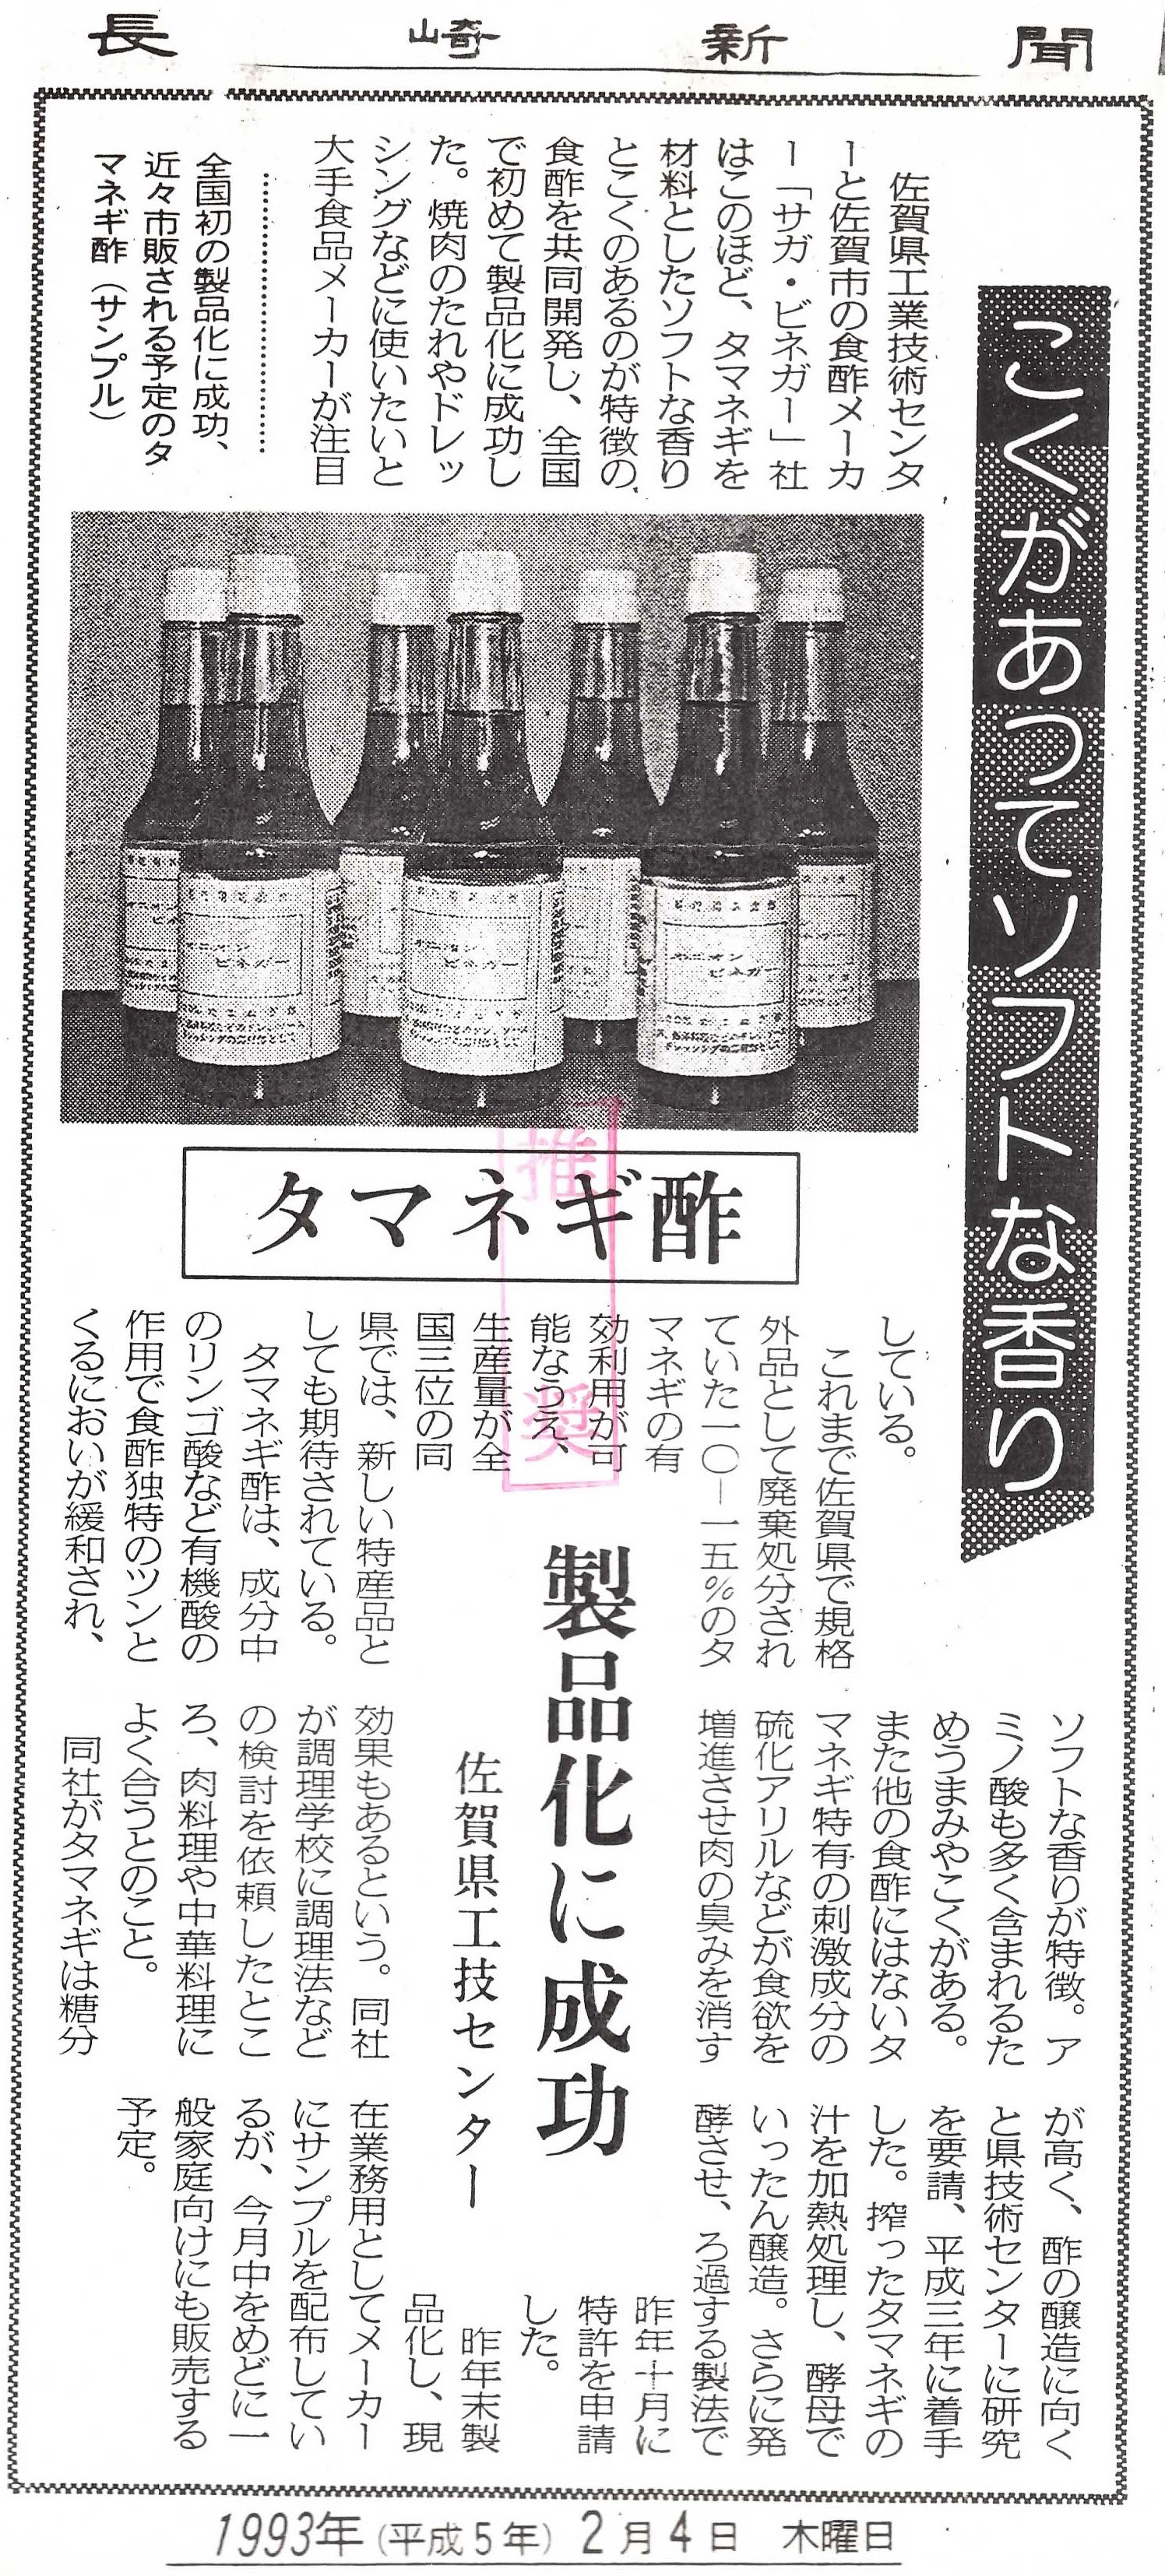 新聞掲載　1993年(平成5年)2月4日　長崎新聞　「タマネギ酢」-(2)